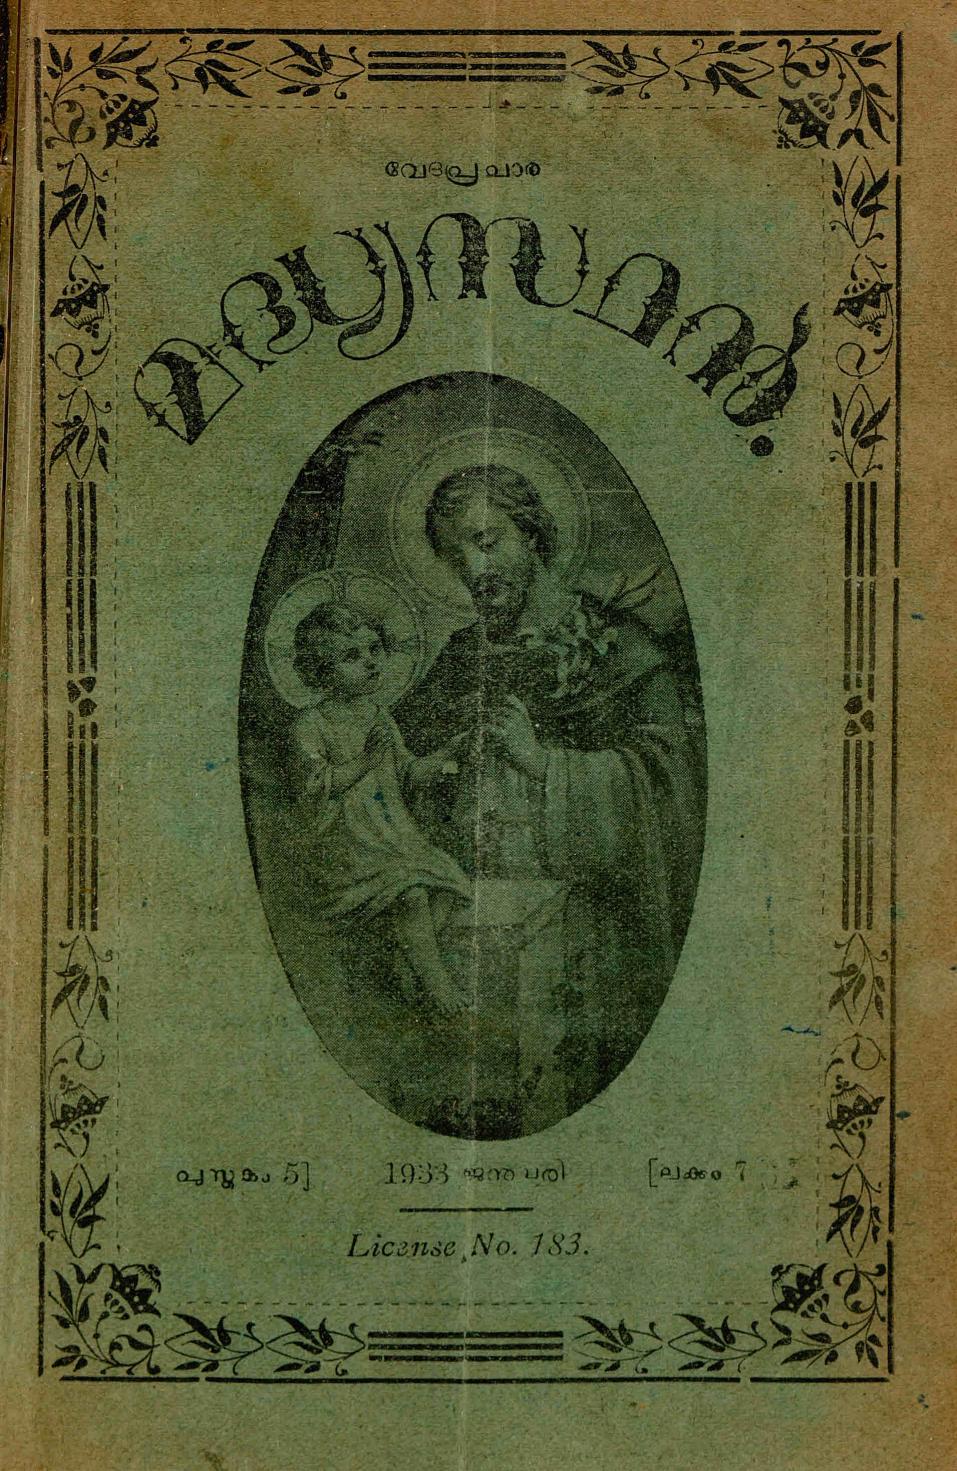 1933 – വേദപ്രചാര മദ്ധ്യസ്ഥൻ മാസികയുടെ ഏഴു ലക്കങ്ങൾ